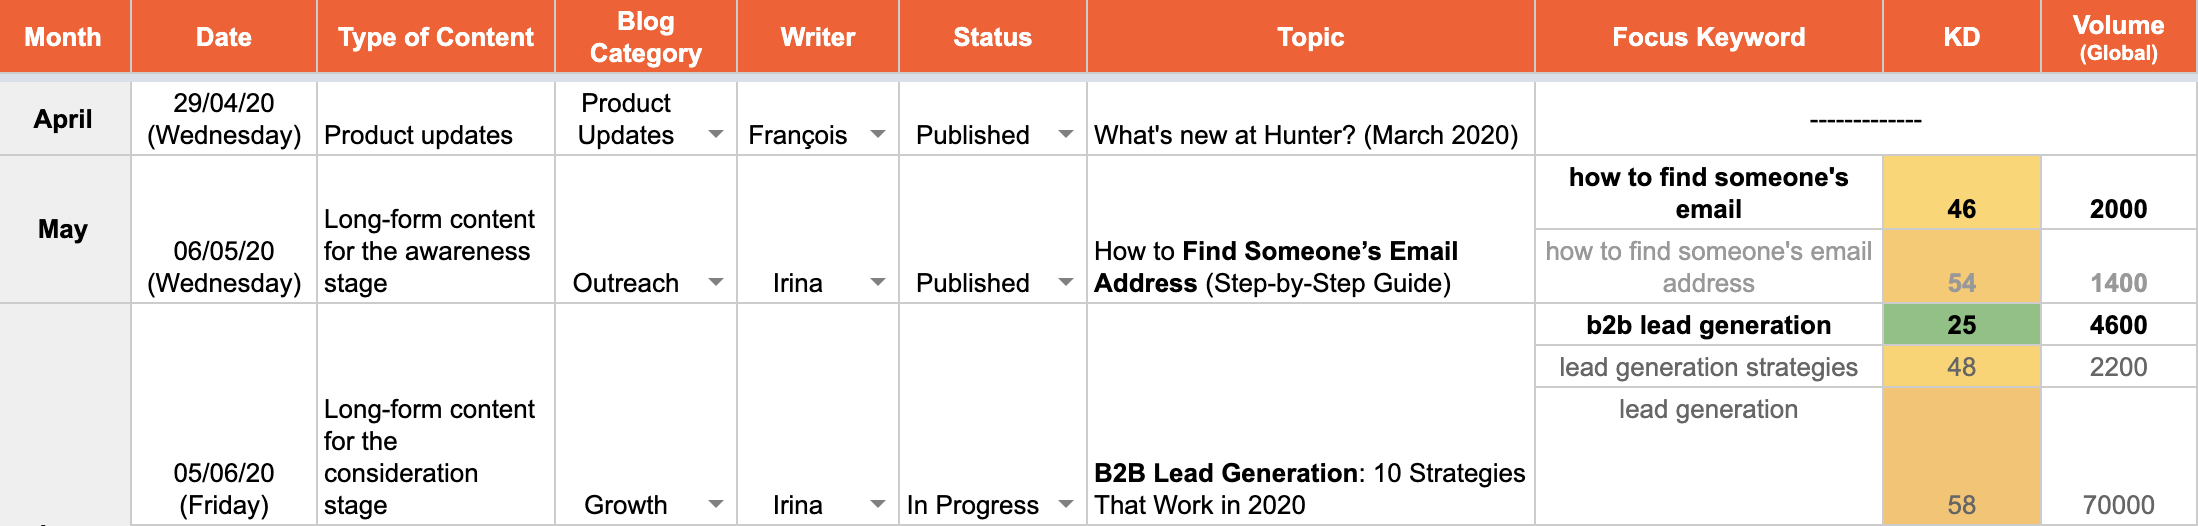 Hunter Blog content schedule